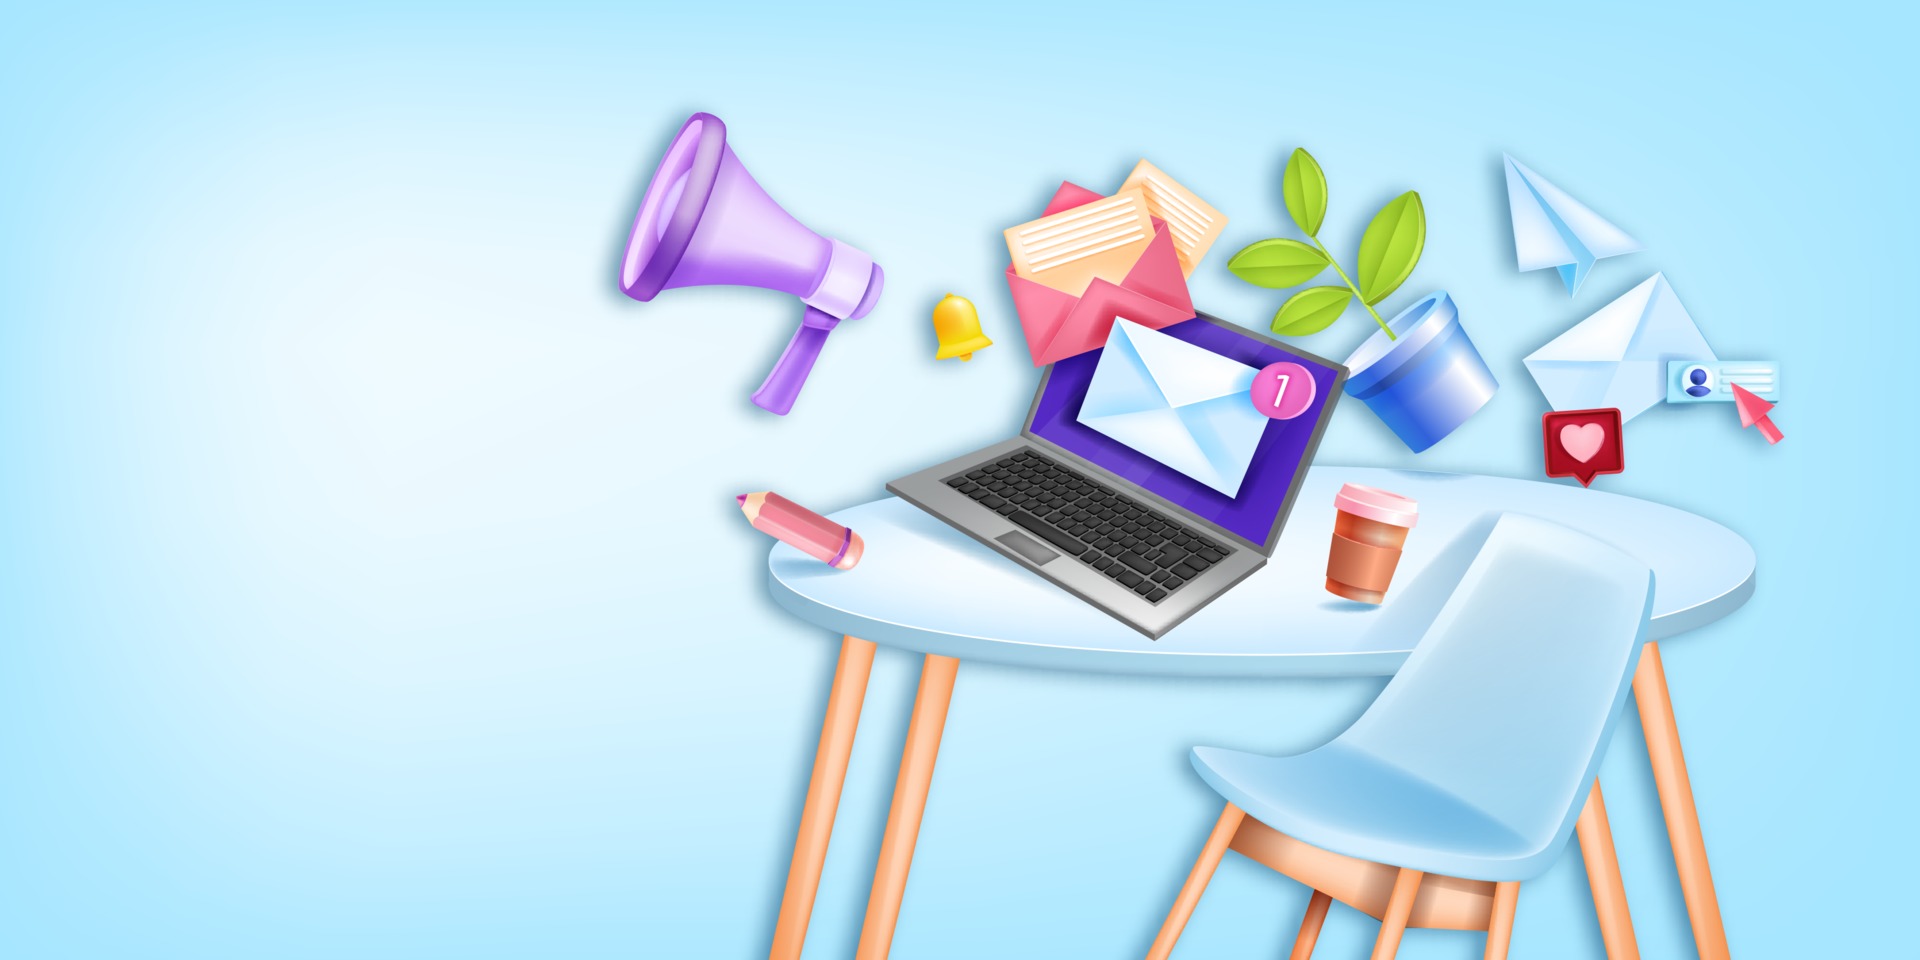 Email marketing trực tuyến là một phương tiện hiệu quả để tiếp cận khách hàng và đưa ra thông báo quảng cáo của bạn. Hãy cùng xem các hình ảnh để hiểu rõ hơn về cách thức áp dụng email marketing trực tuyến và tạo ra chiến lược tiếp cận khách hàng của bạn. 